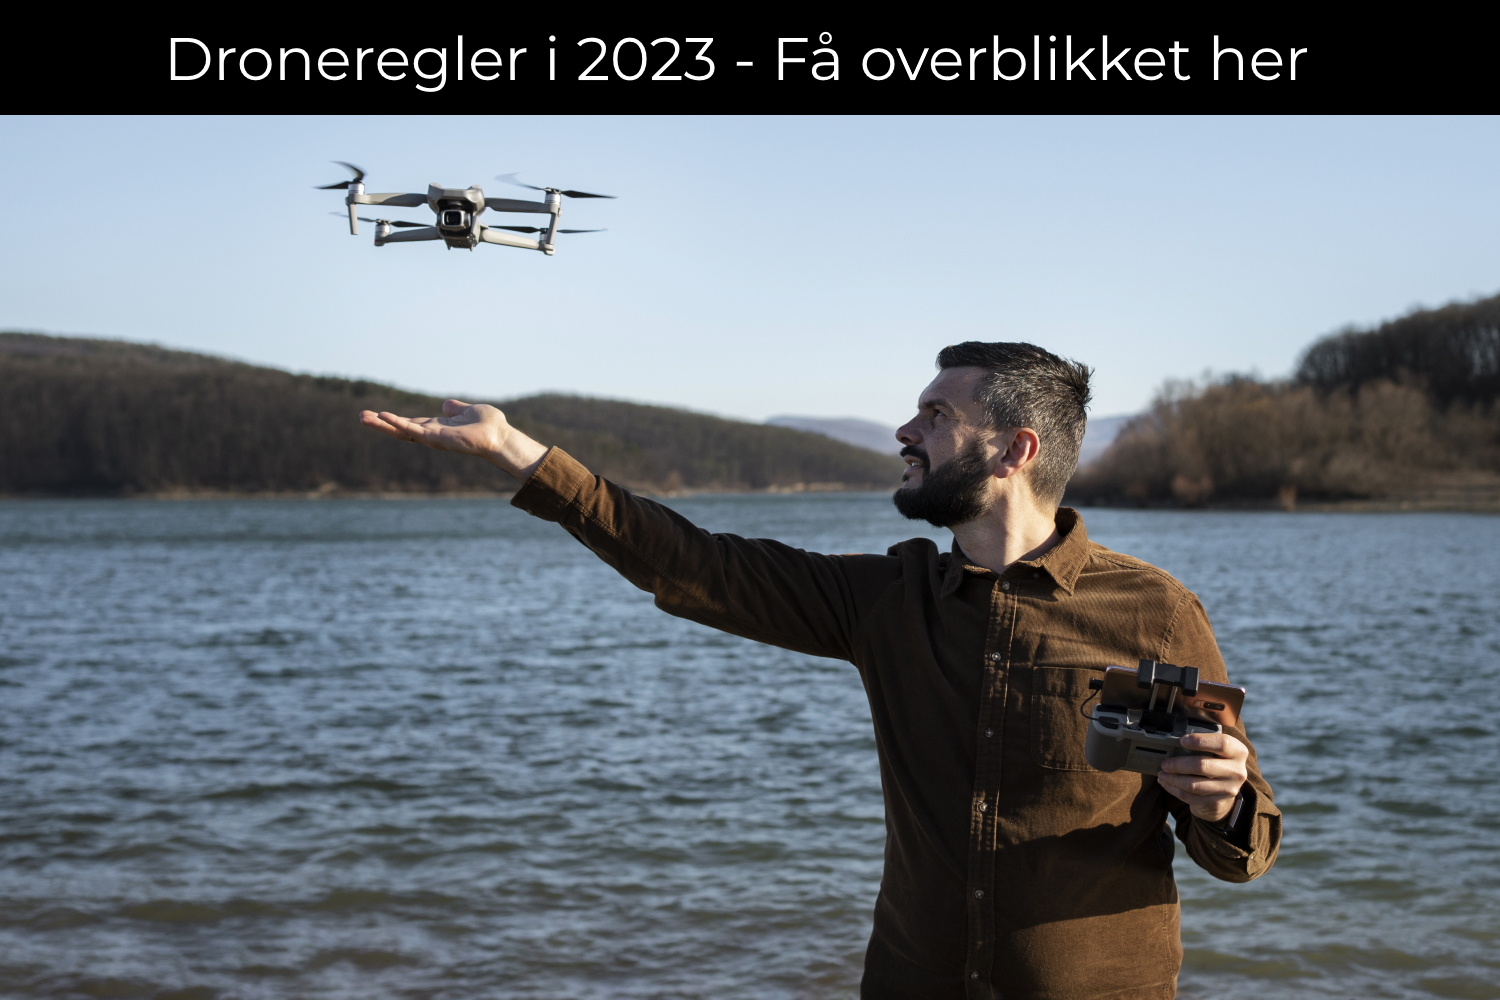 Droneregler i 2023 - Overblikket Her